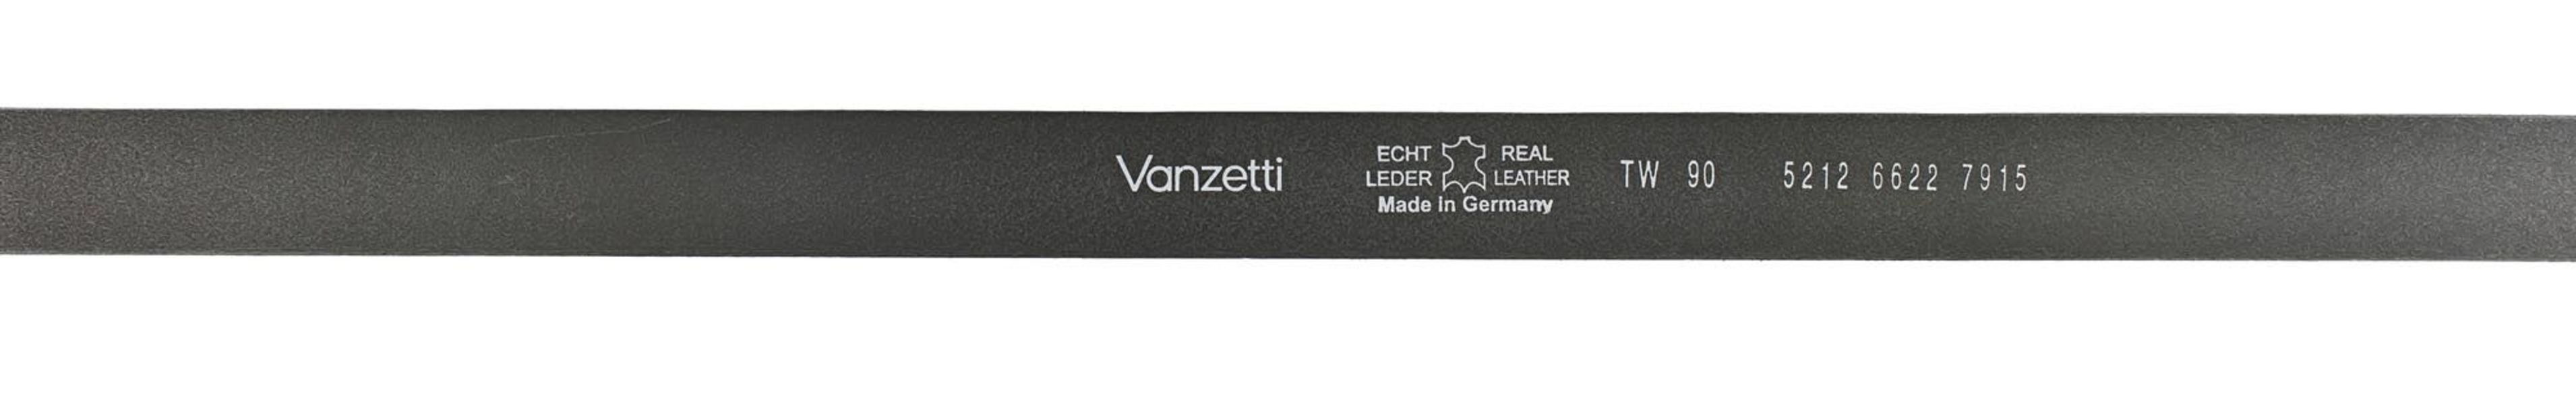 Vanzetti Ceinture en cuir avec effet métallique - noir (7915)